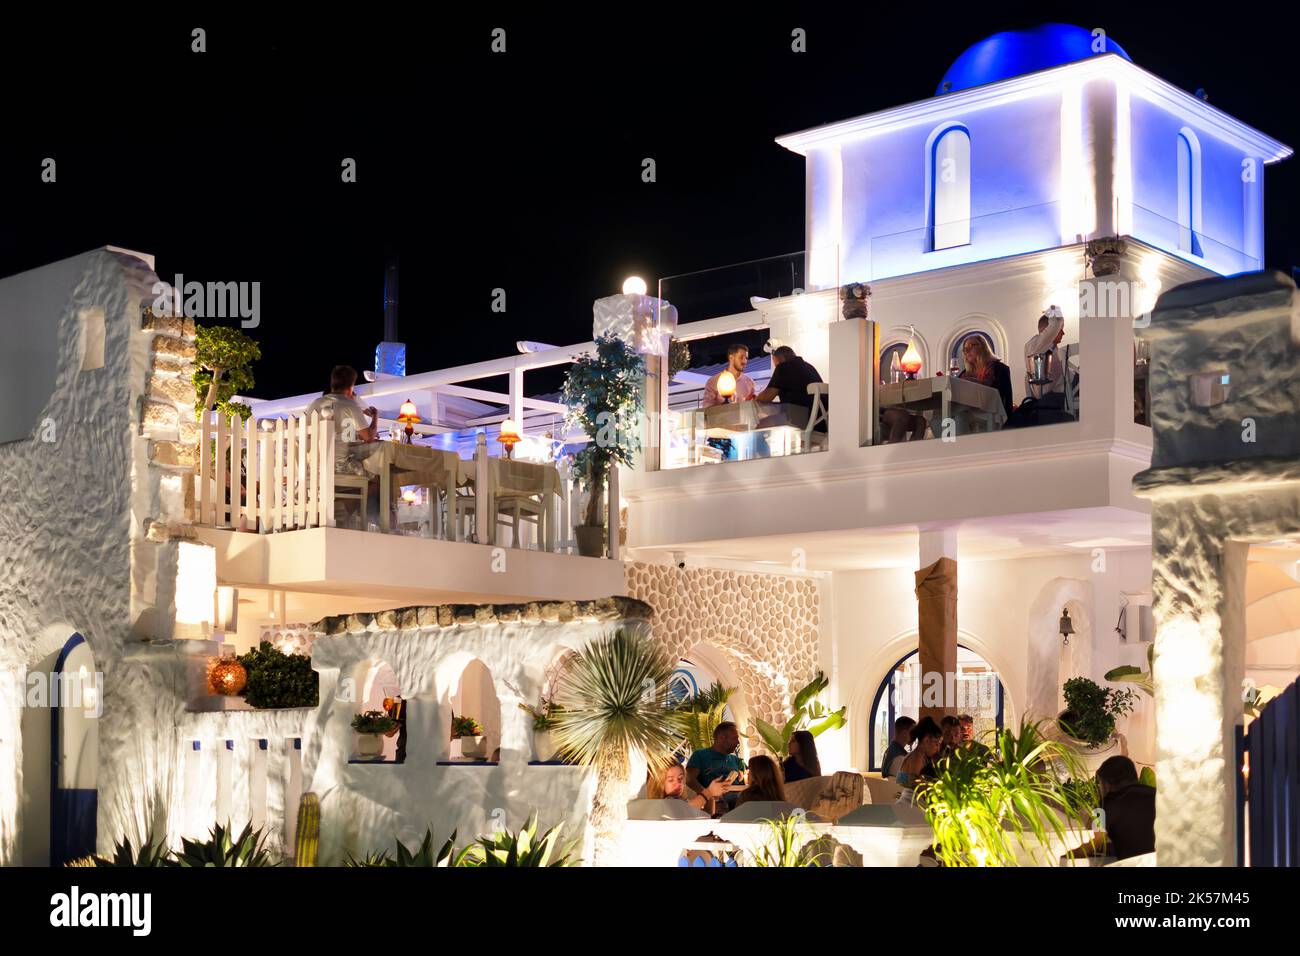 Una Taverna griega, con los clientes comiendo en las mesas exteriores en una tarde cálida de verano. El restaurante está iluminado con luz azul y blanca Foto de stock